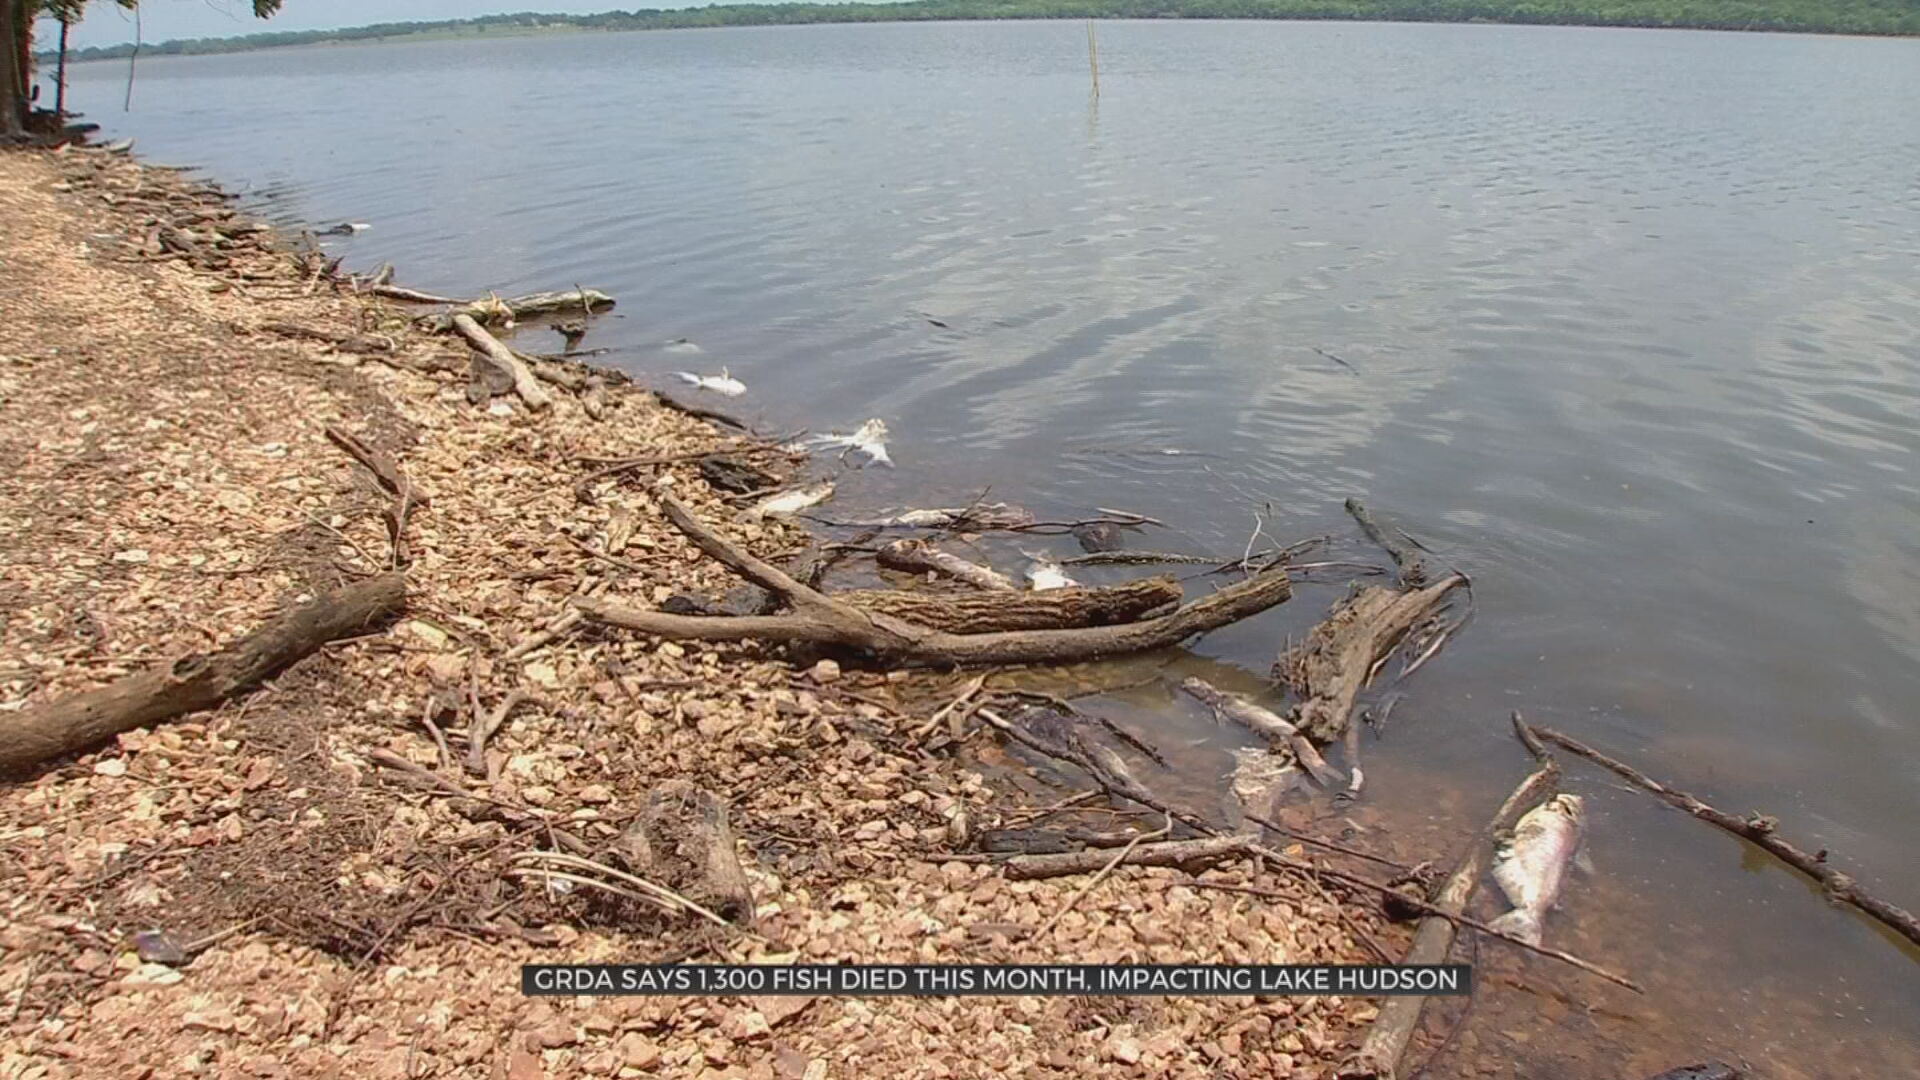 GRDA Says 1,300 Fish Died This Month, Impacting Lake Hudson